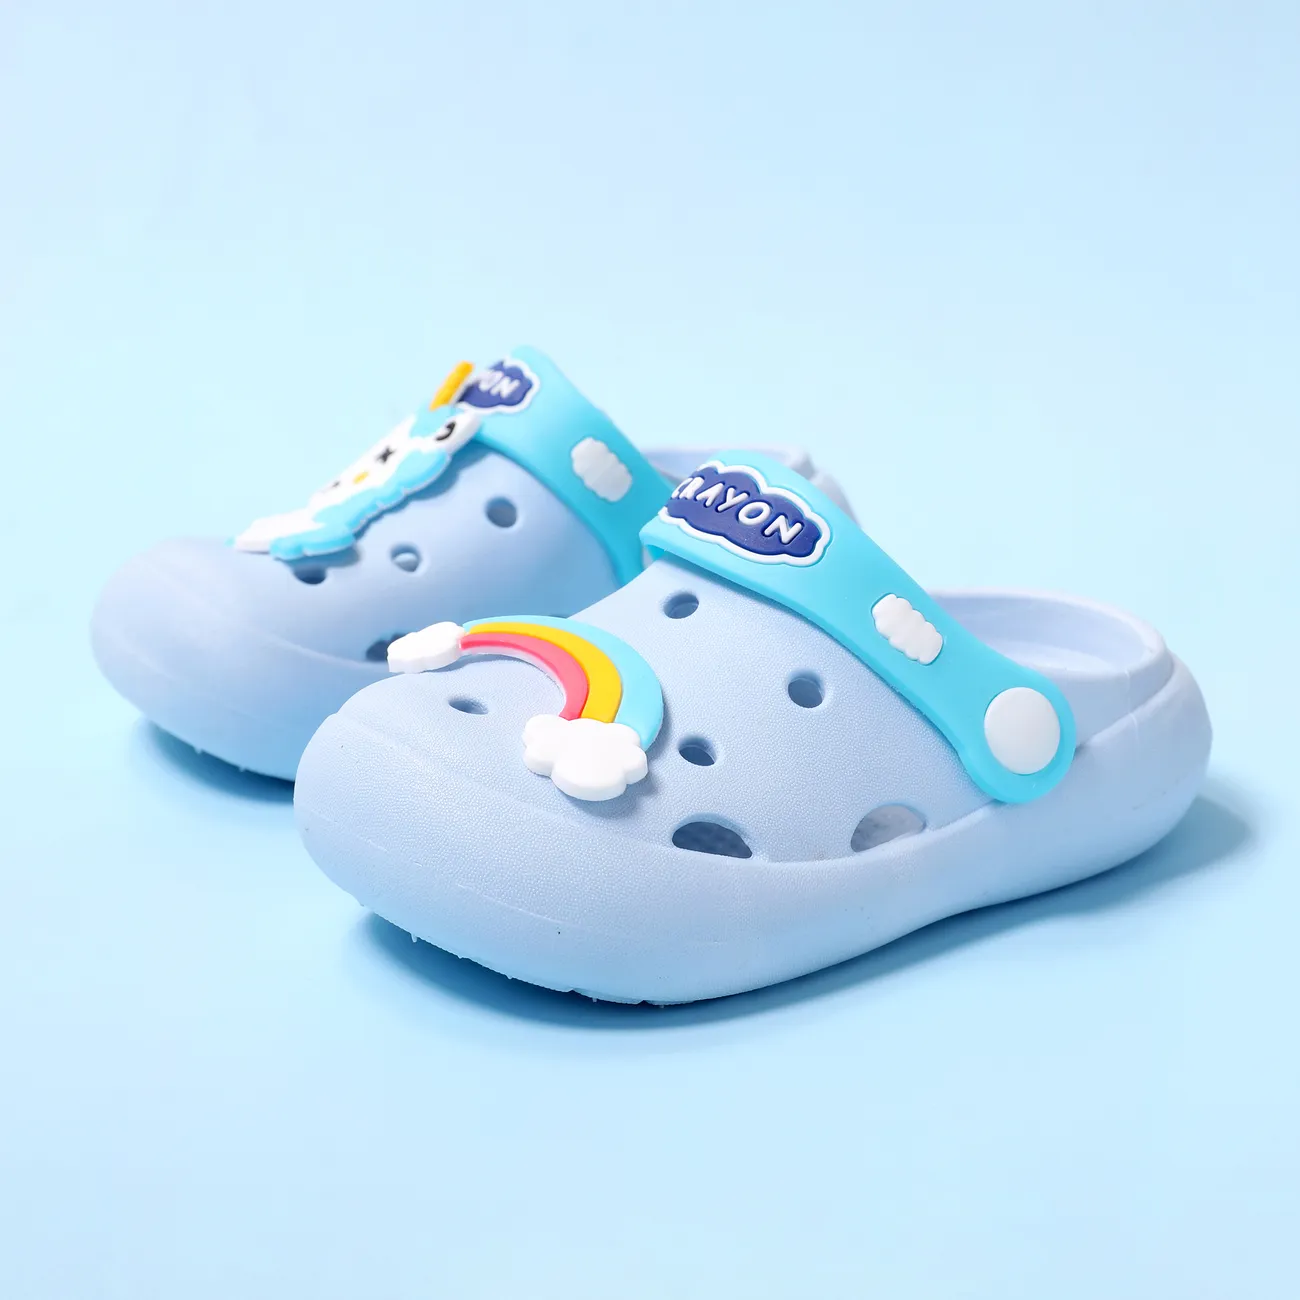 蹣跚學步/兒童女孩/男孩彩色彩虹和獨角獸設計沙灘洞鞋 藍色 big image 1